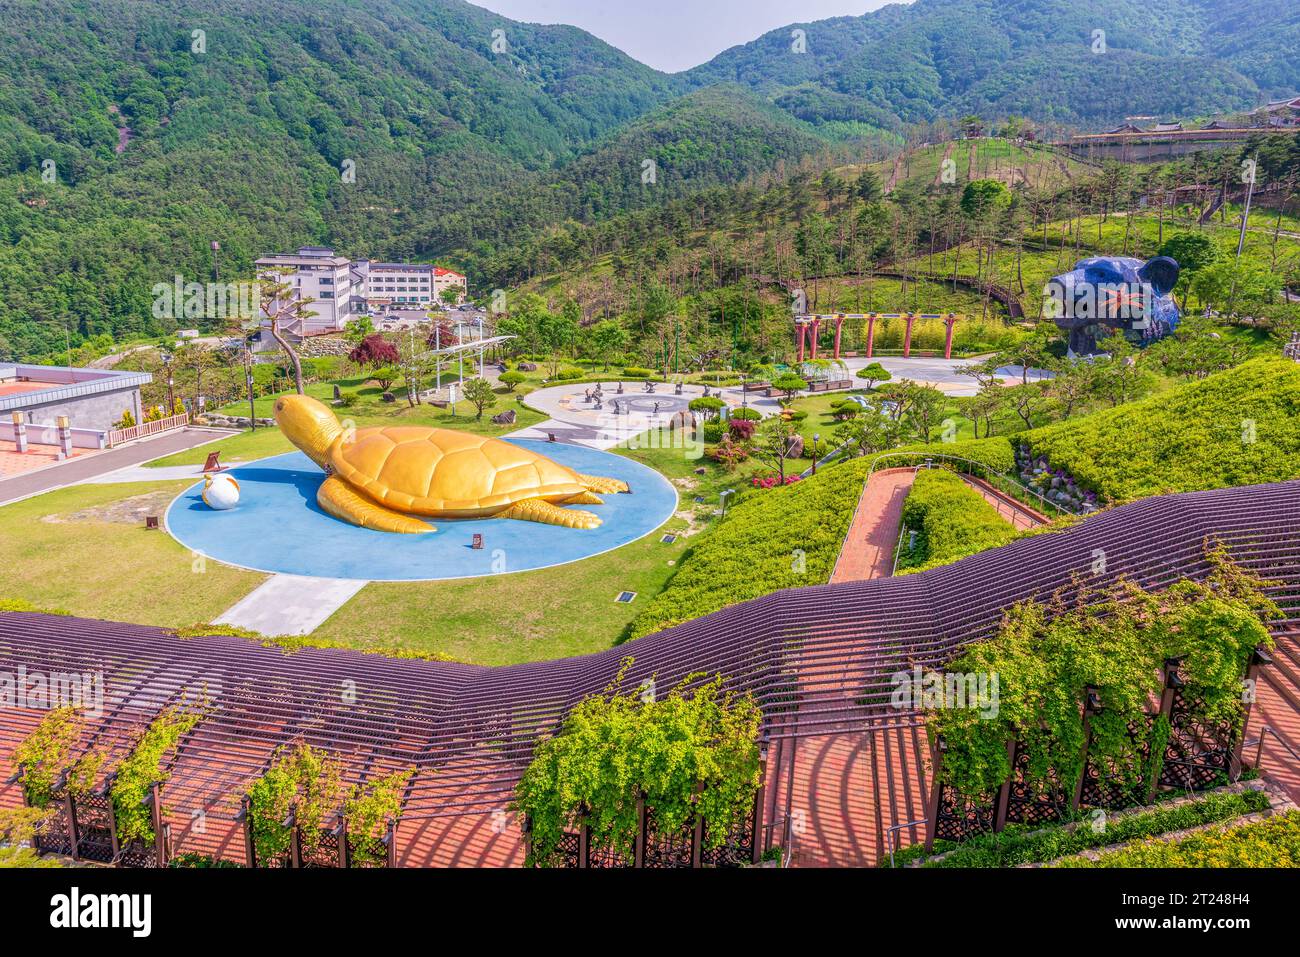 Parque con varias esculturas y estructuras como una tortuga de oro, Sancheong-gun, Corea del Sur Foto de stock